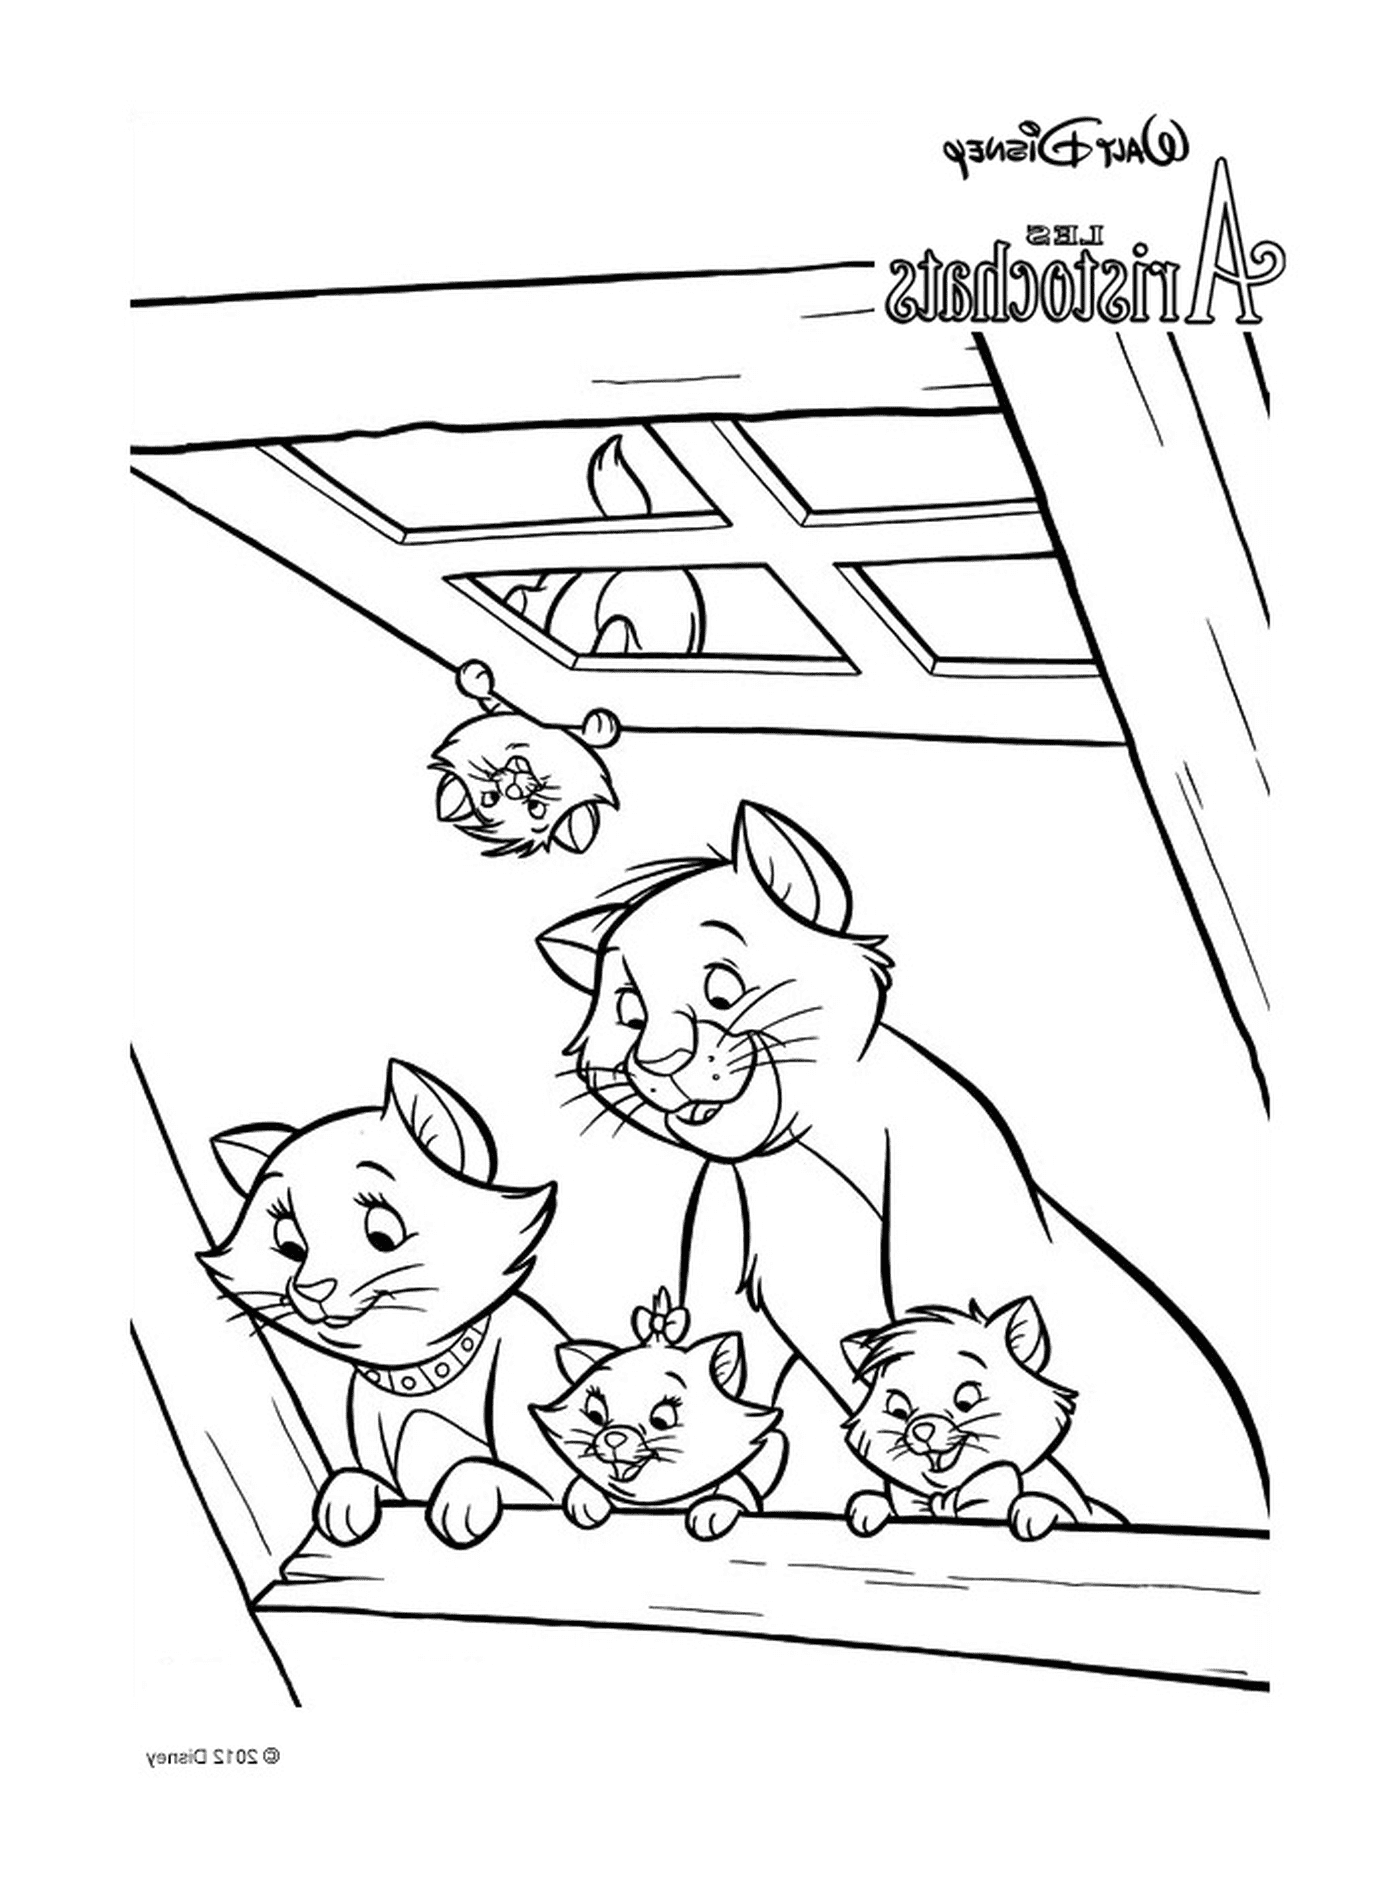  Un grupo de gatos sentados en el techo de un edificio 